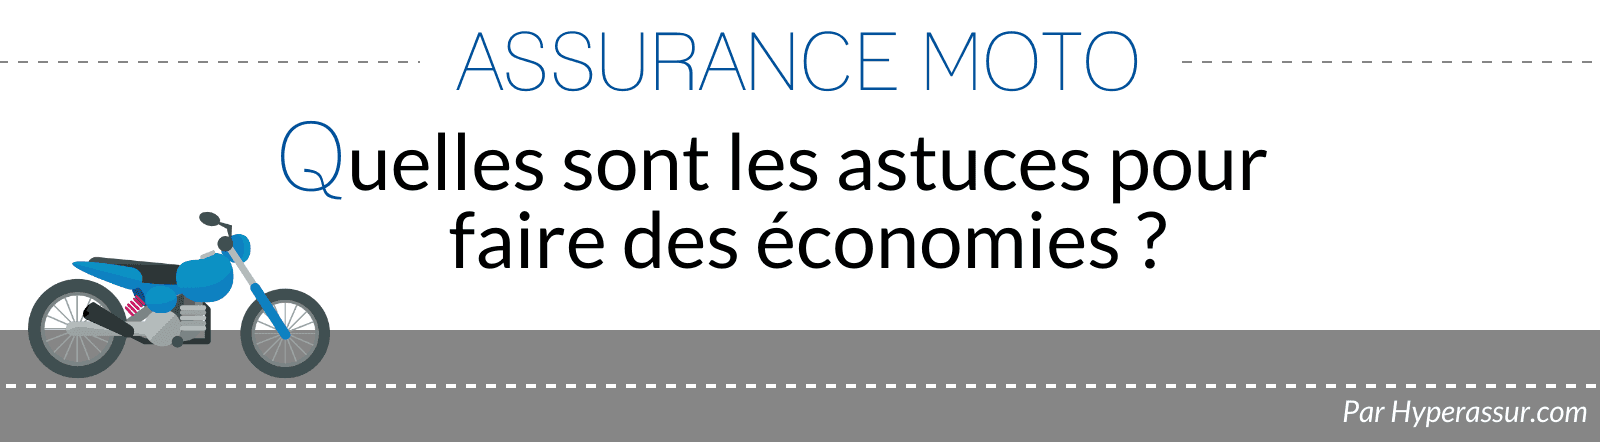 Assurance moto : Quelles sont les astuces pour faire des économies ?